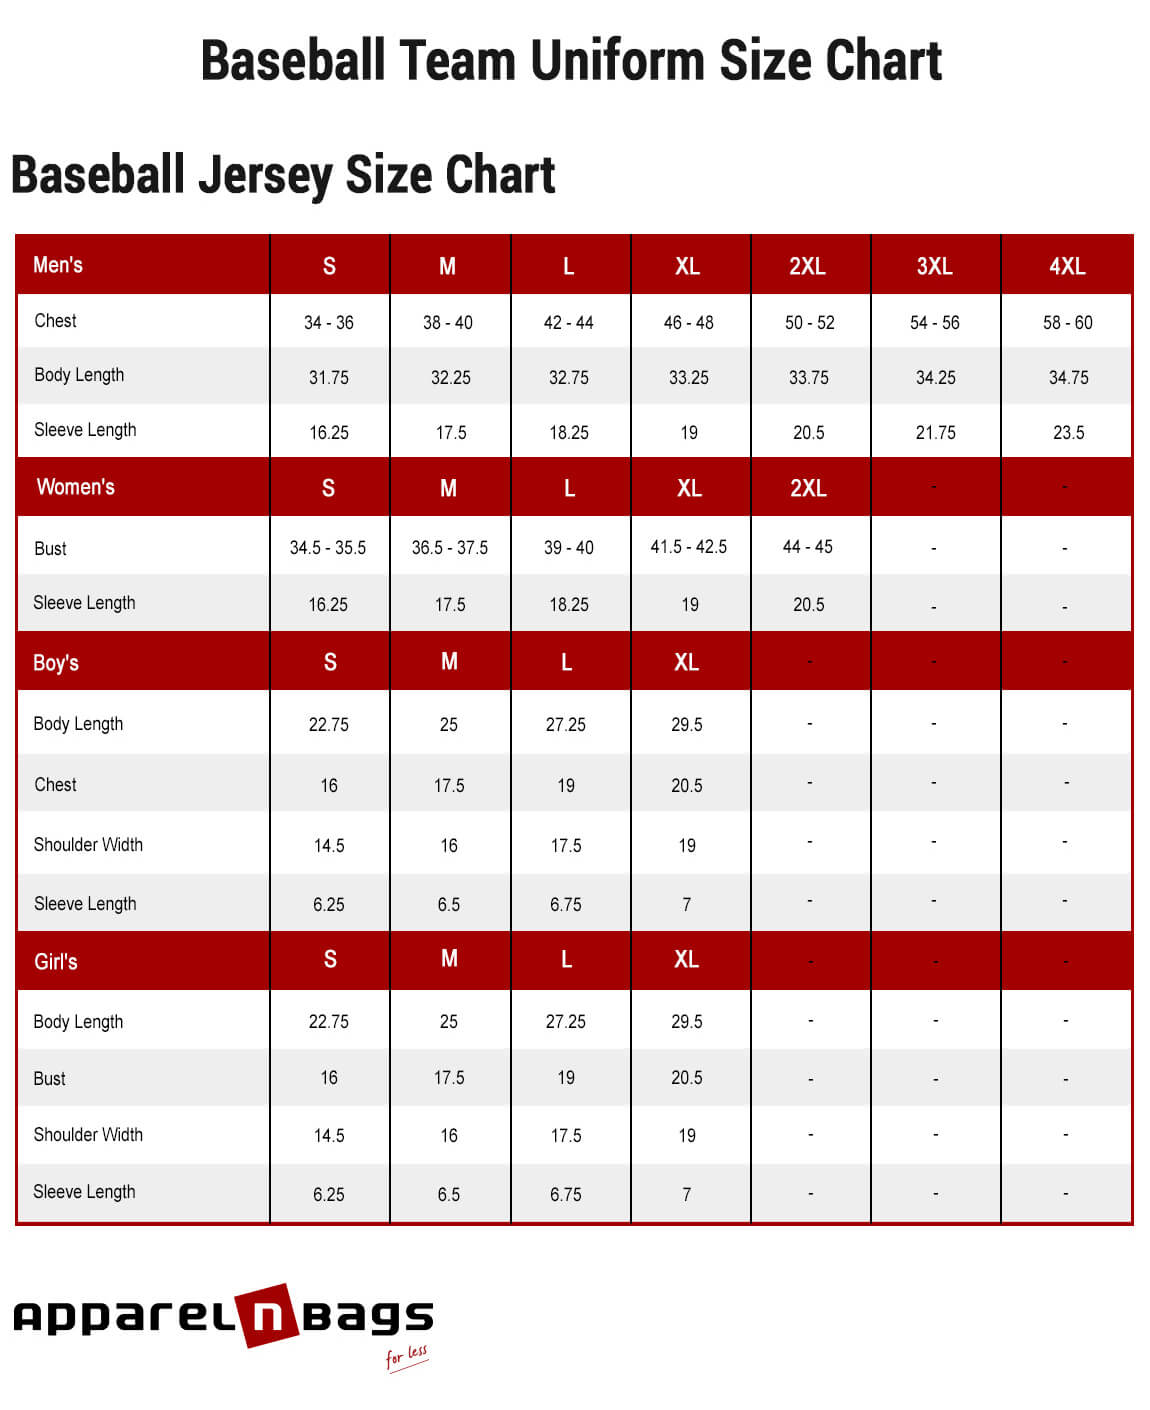 size 48 baseball jersey, Off 70%